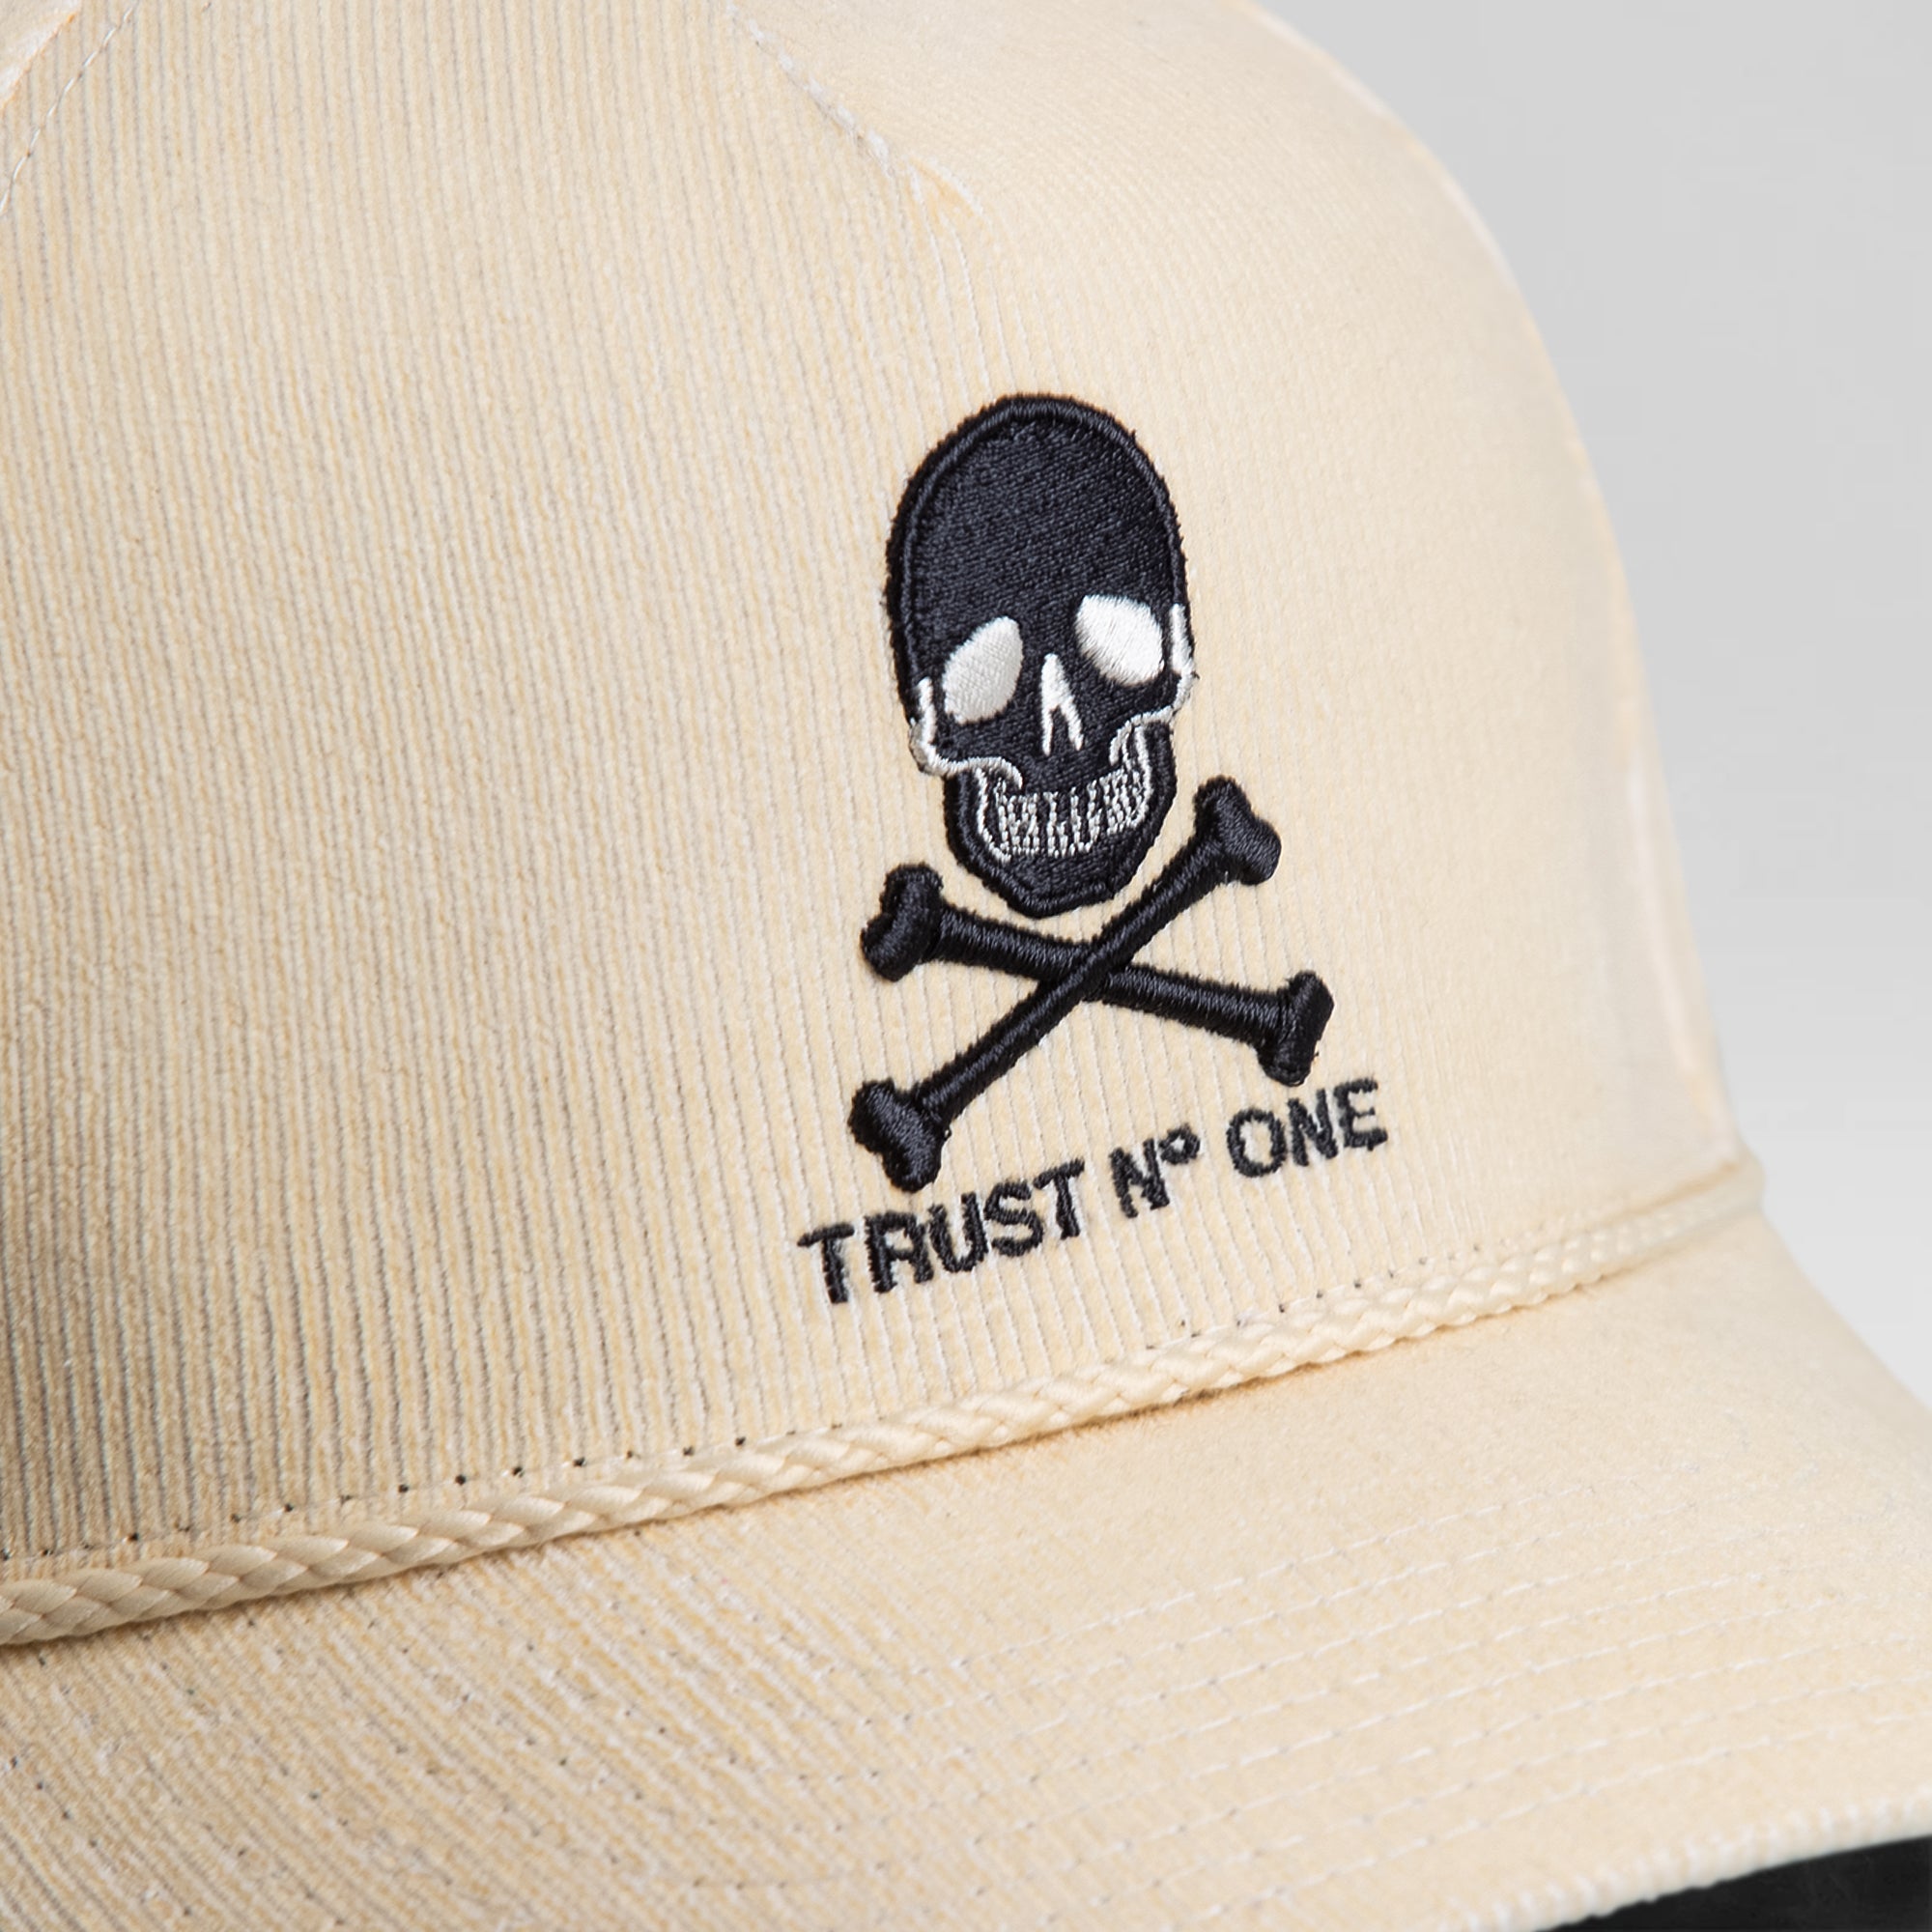 TRUST NO ONE SAND CORDUROY TRUCKER HAT